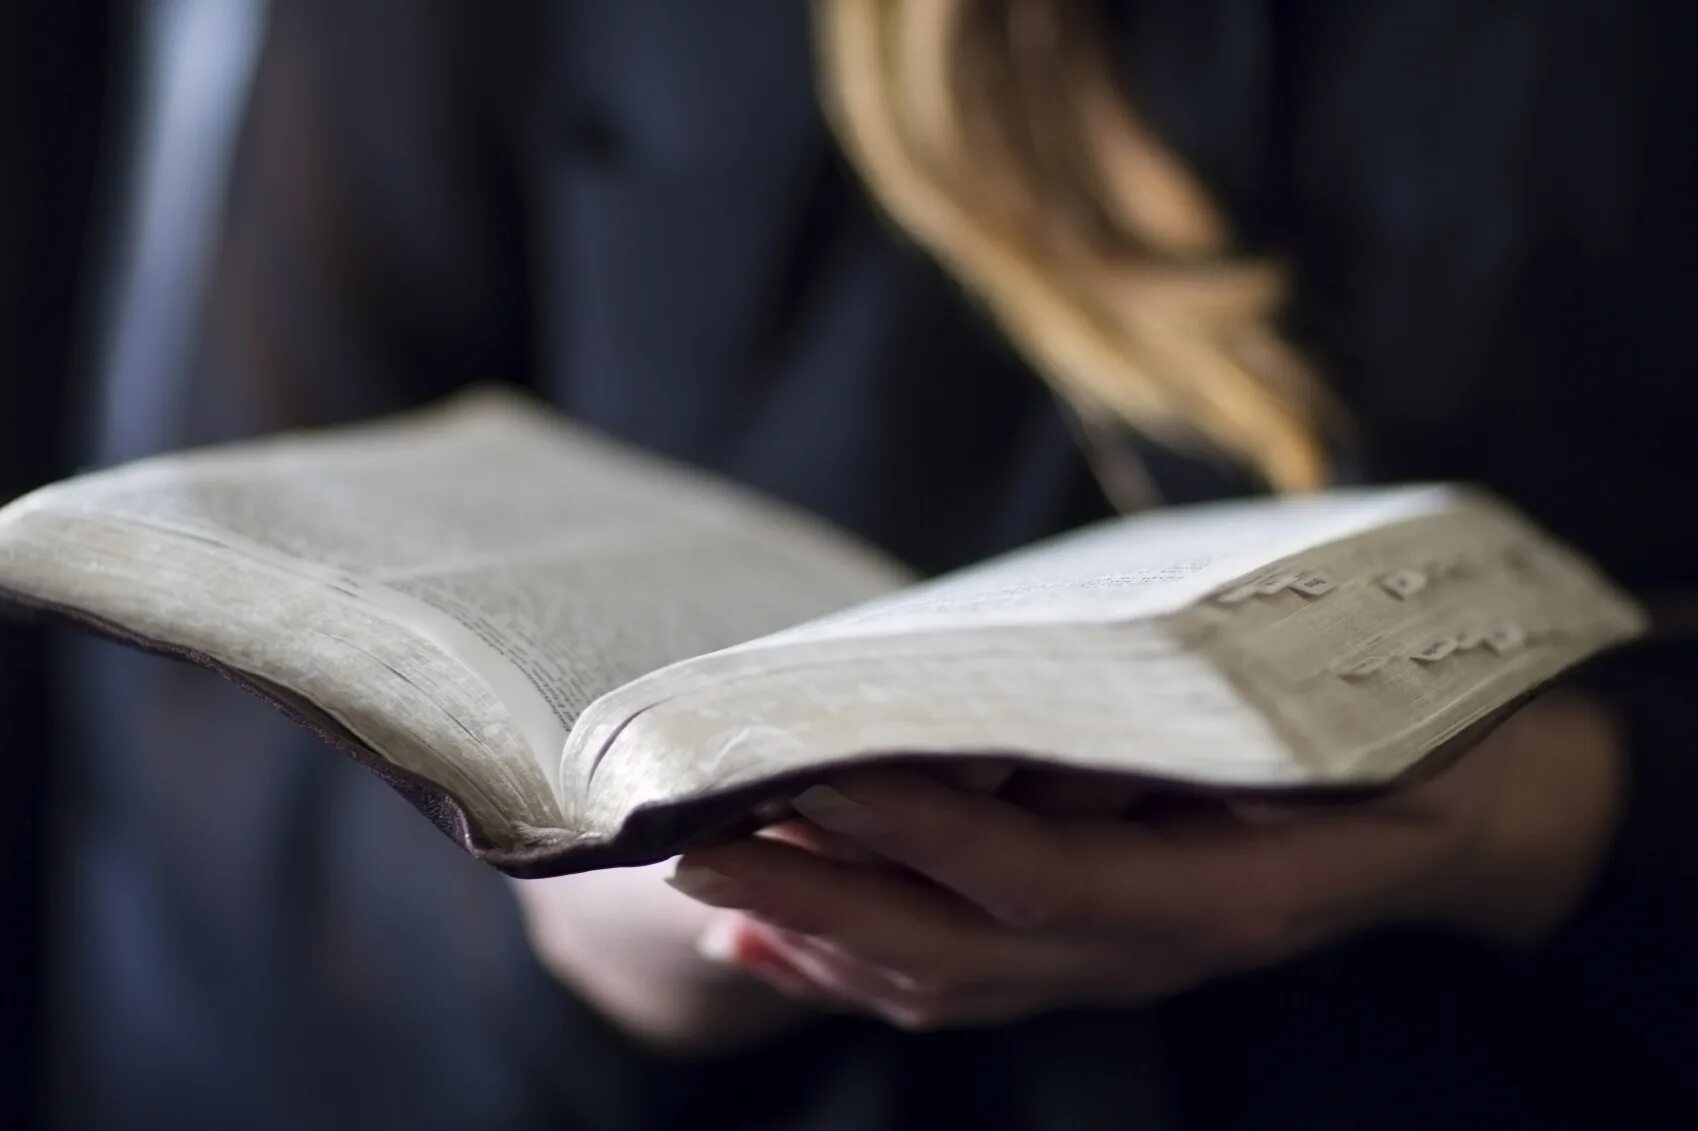 Читаем библию. Чтение Библии. Человек с Библией. Человек читает Библию. Девушка читает Библию.